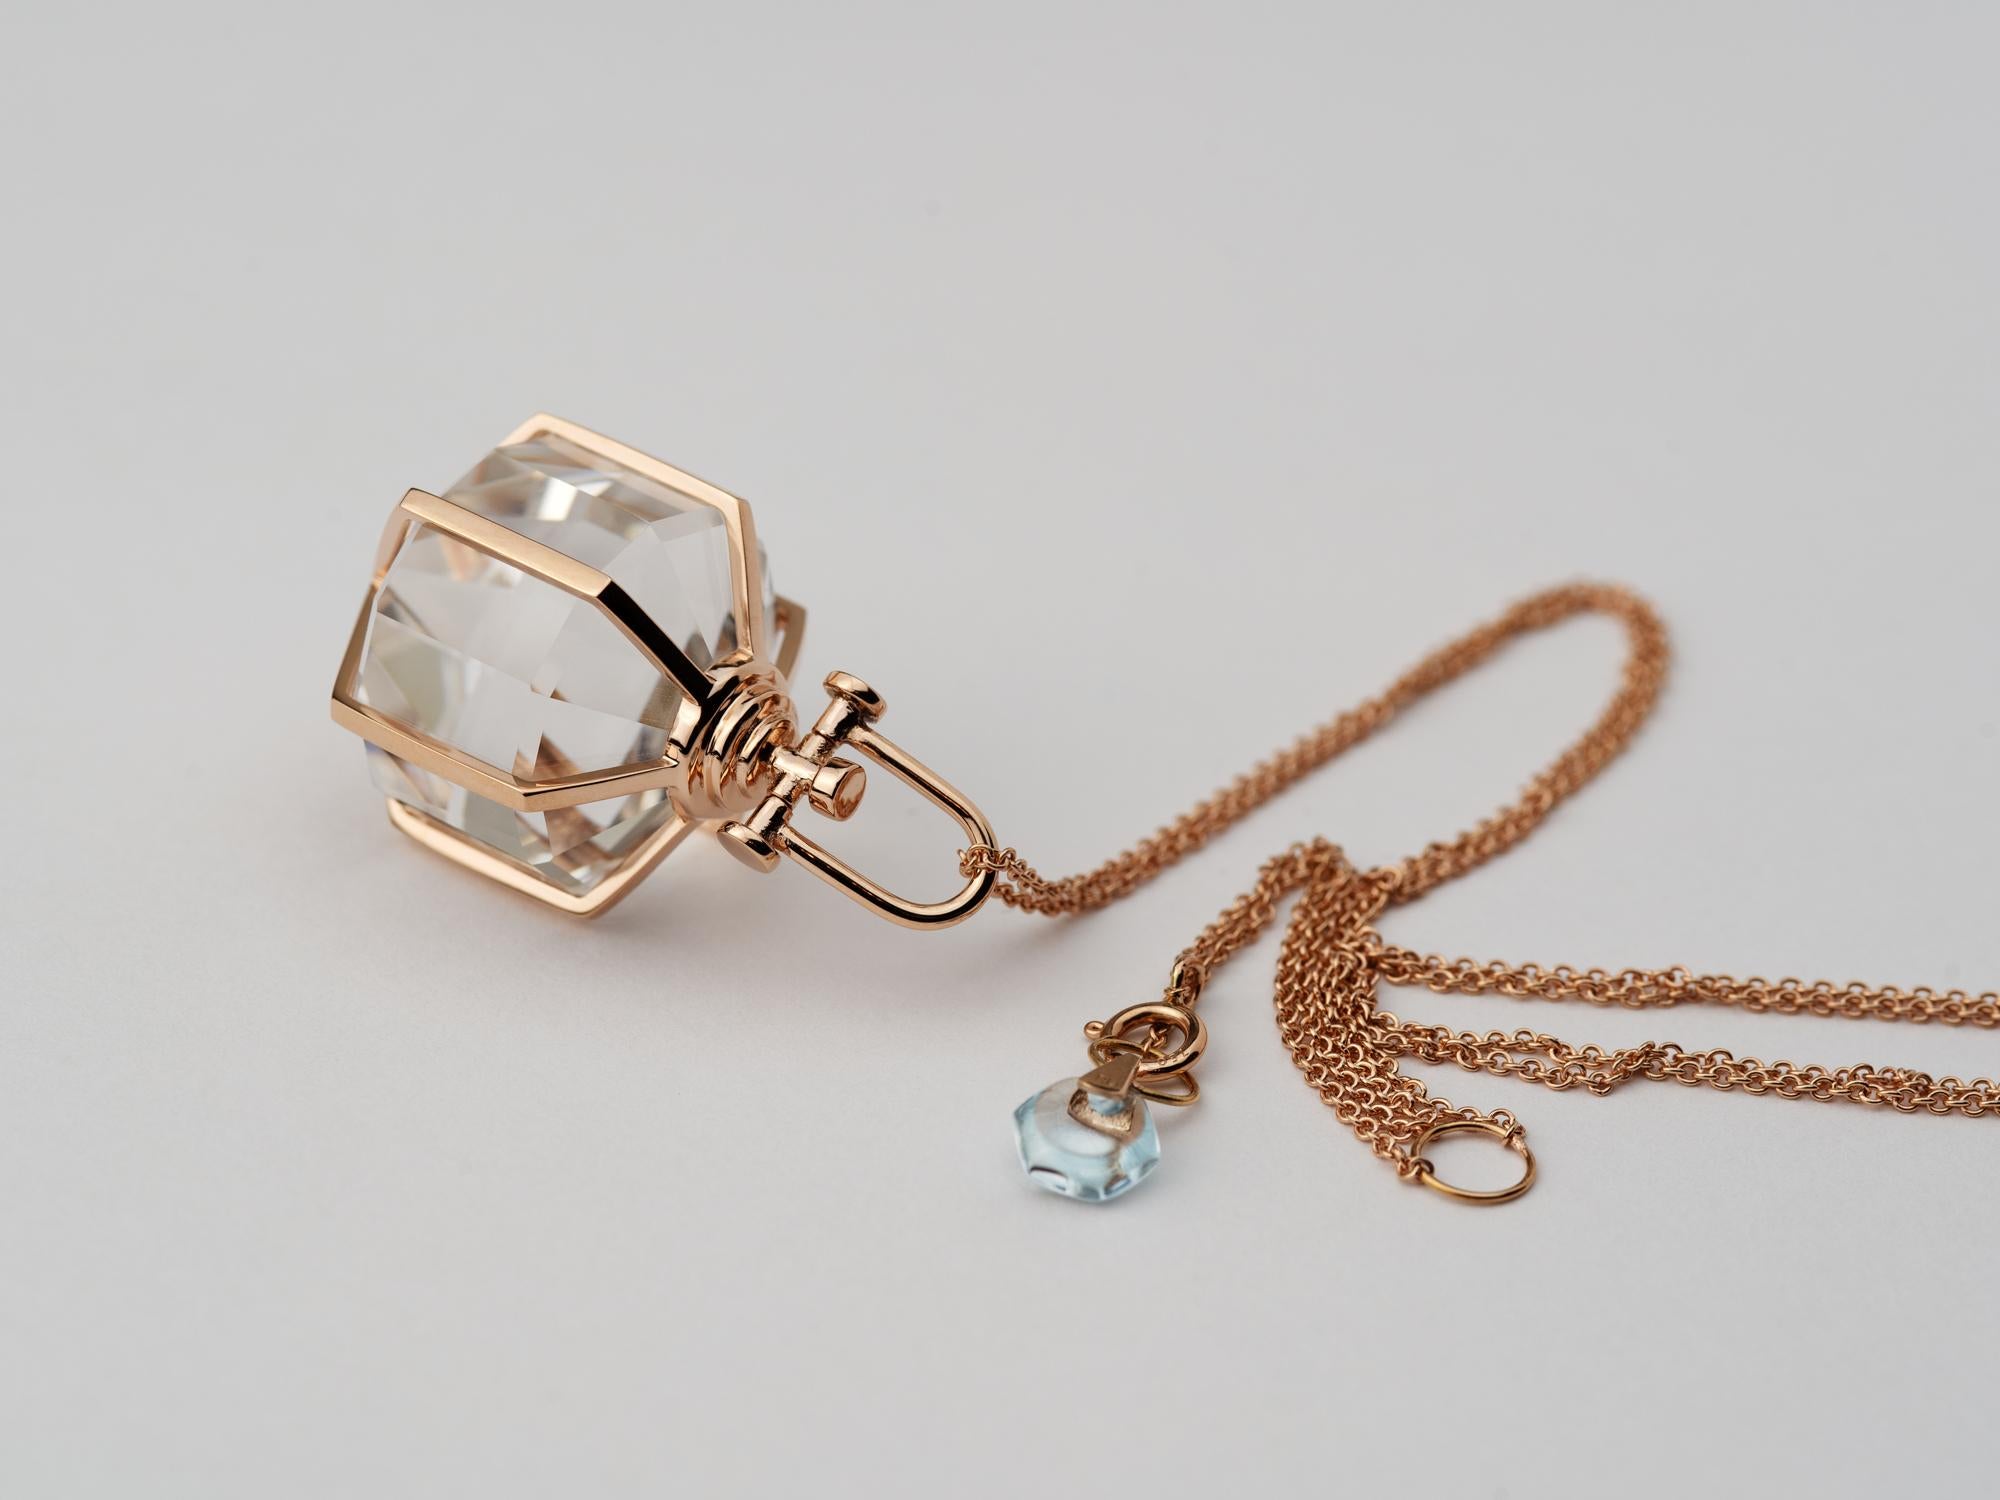 Rebecca Li Six Senses Talisman Necklace 18k Rose Gold Large Natural Rock Crystal For Sale 1